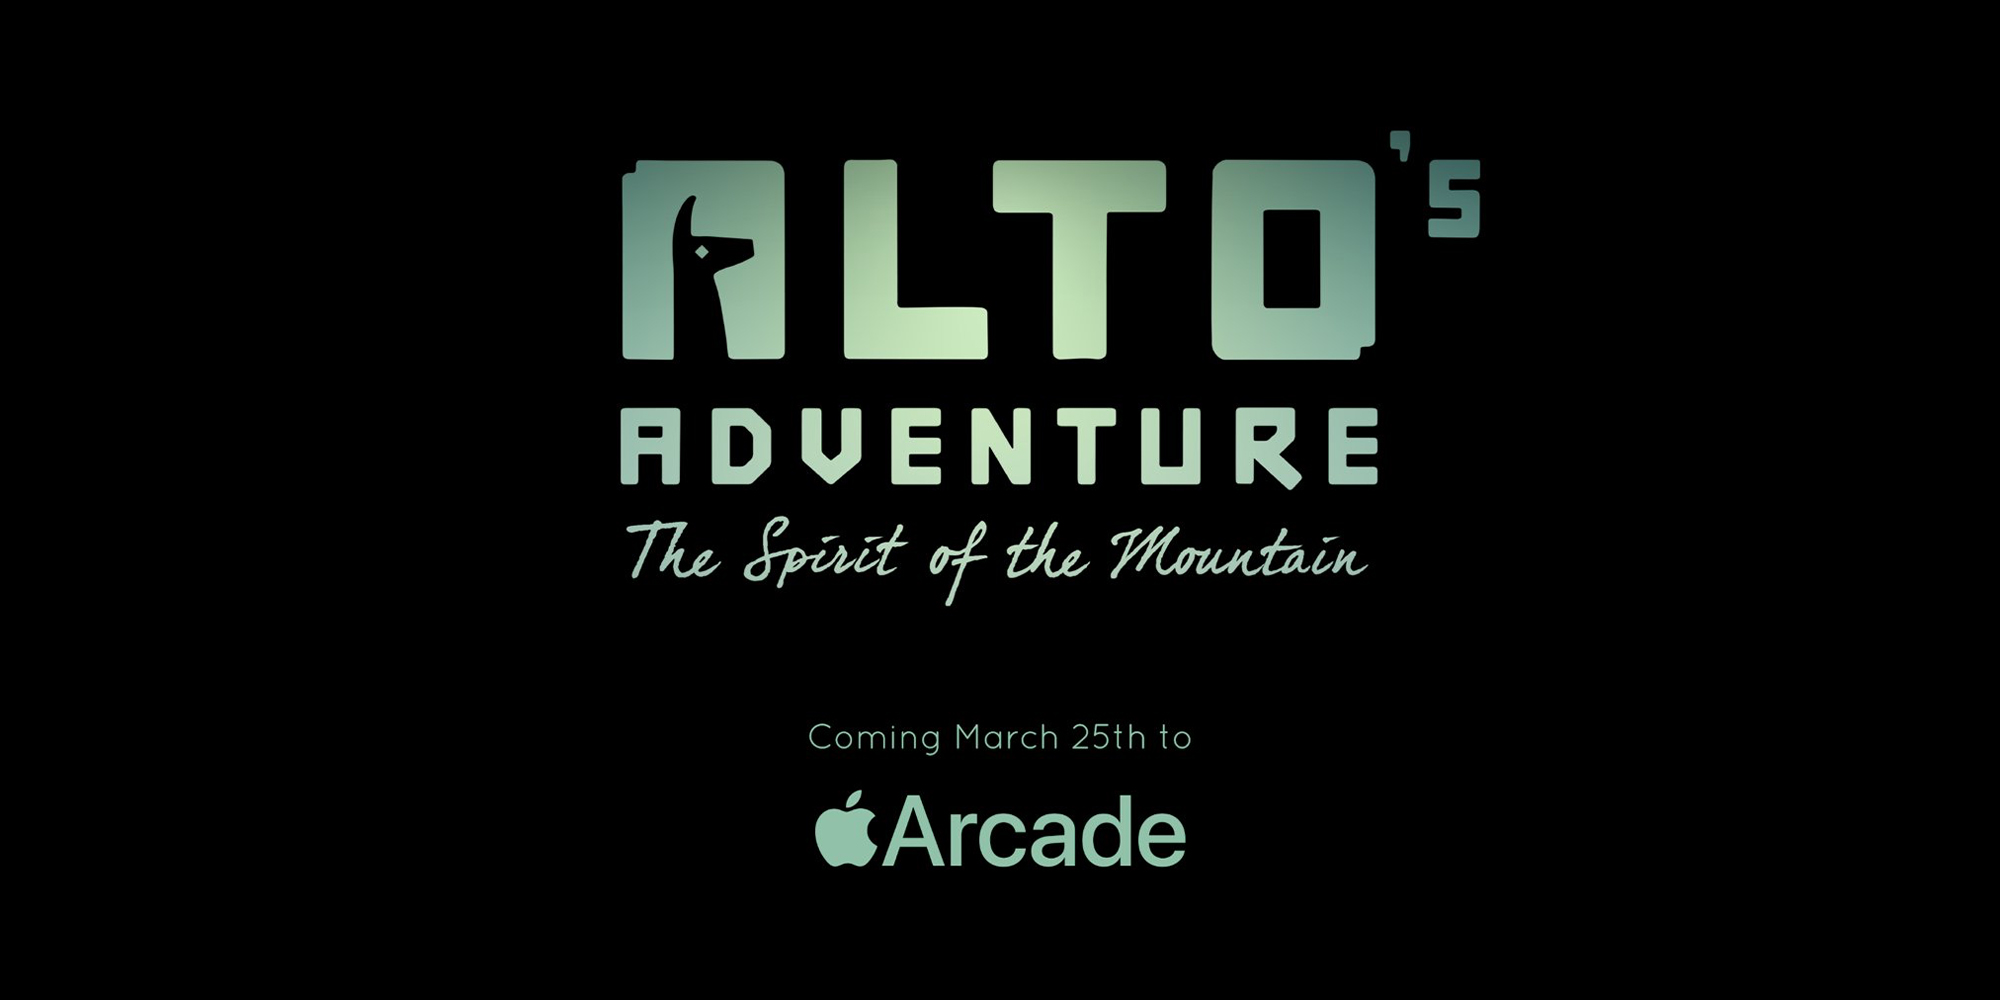 Alto's Adventure: The Spirit of the Mountain آورده شده است.